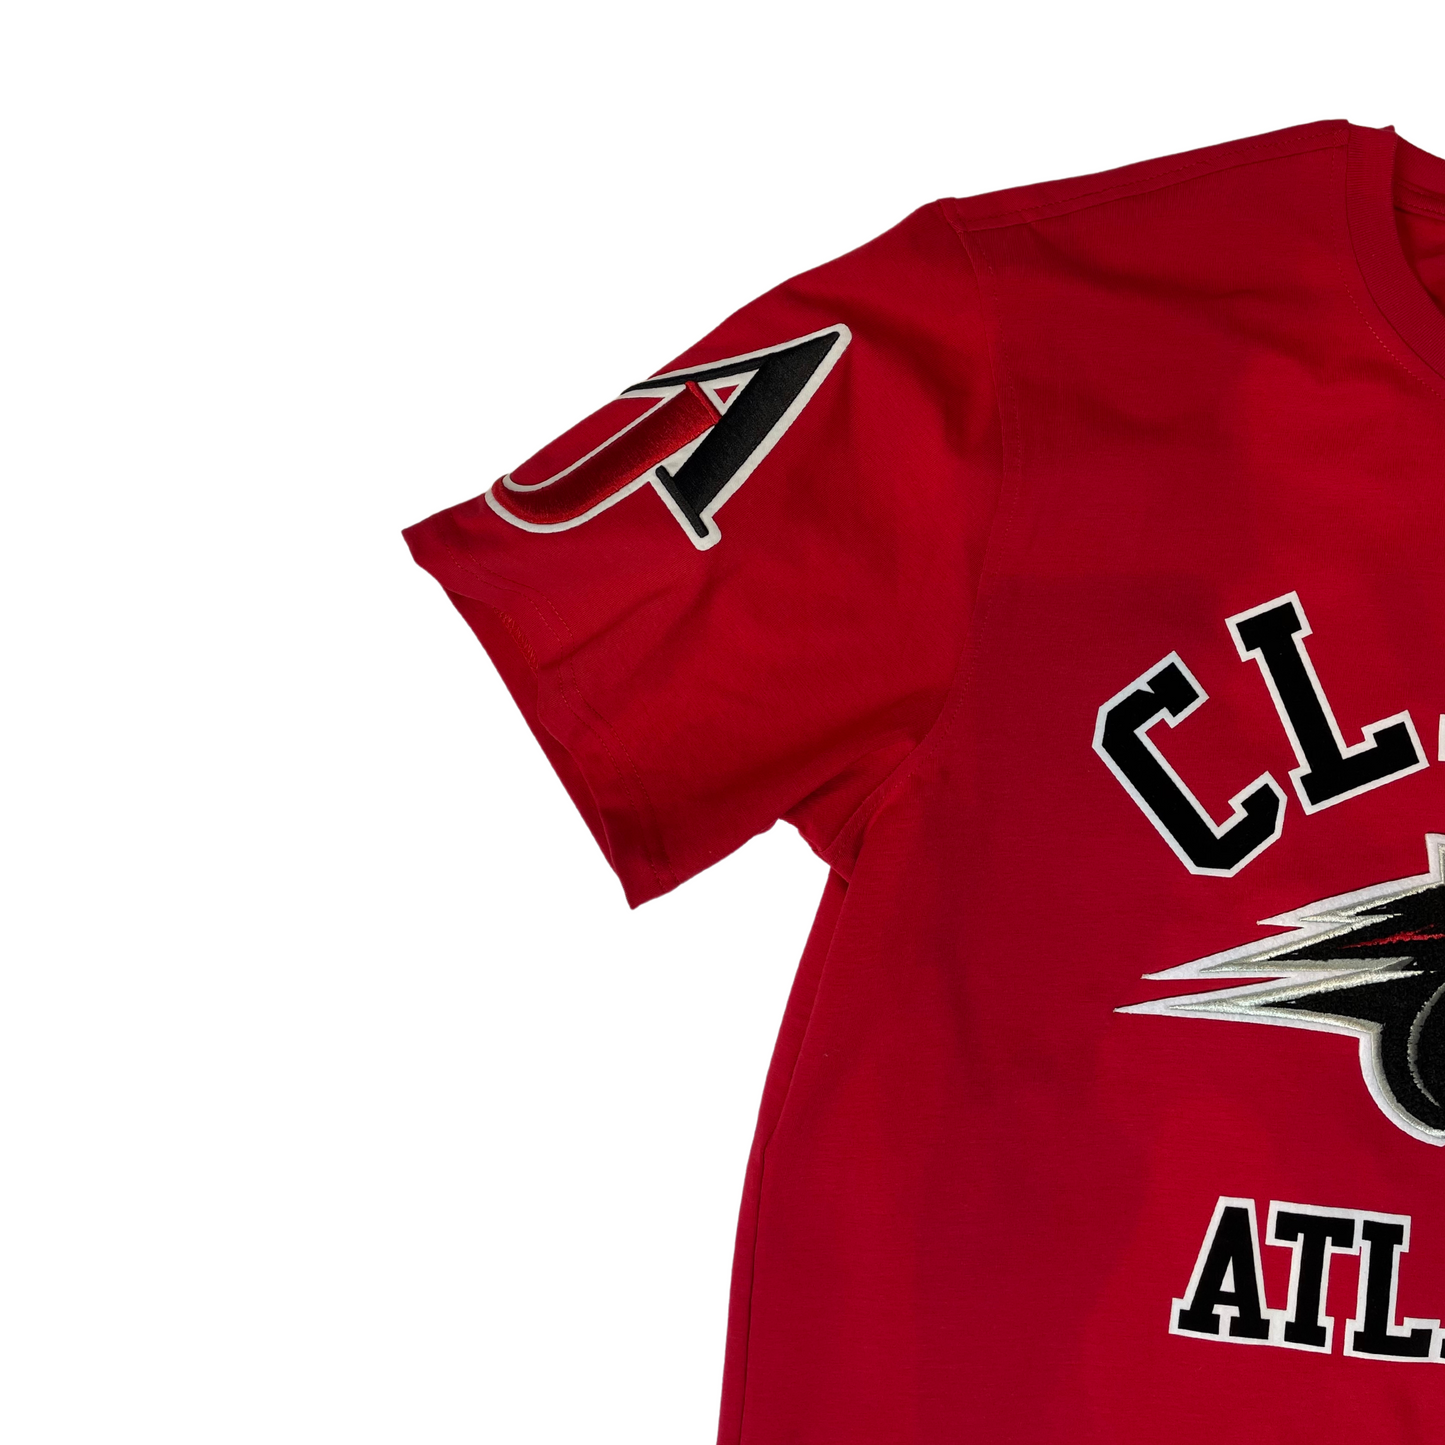 HBCU Clarke Atlanta T-shirt